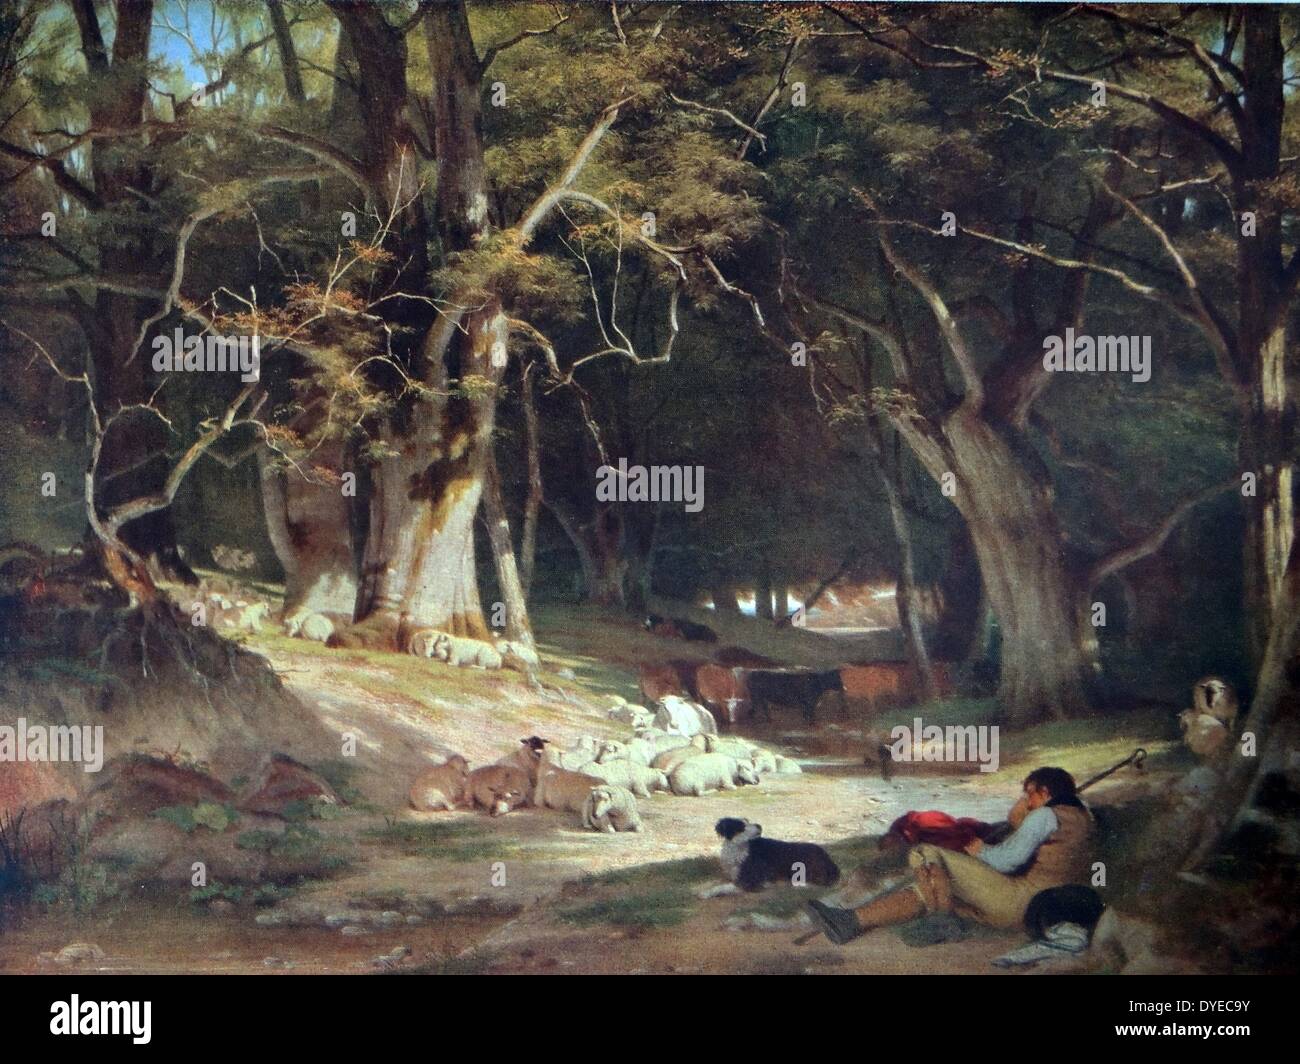 Landschaft Gemälde mit dem Titel Mitte Tag zurückziehen. Das Gemälde zeigt eine Szene mit einem Shepard und seine Schafe Hund eine Pause von Hüten der Herde von Schafen. Von William Frederick Witherington (1785-1865), englischer Maler und akademischen. Vom 1845 Stockfoto